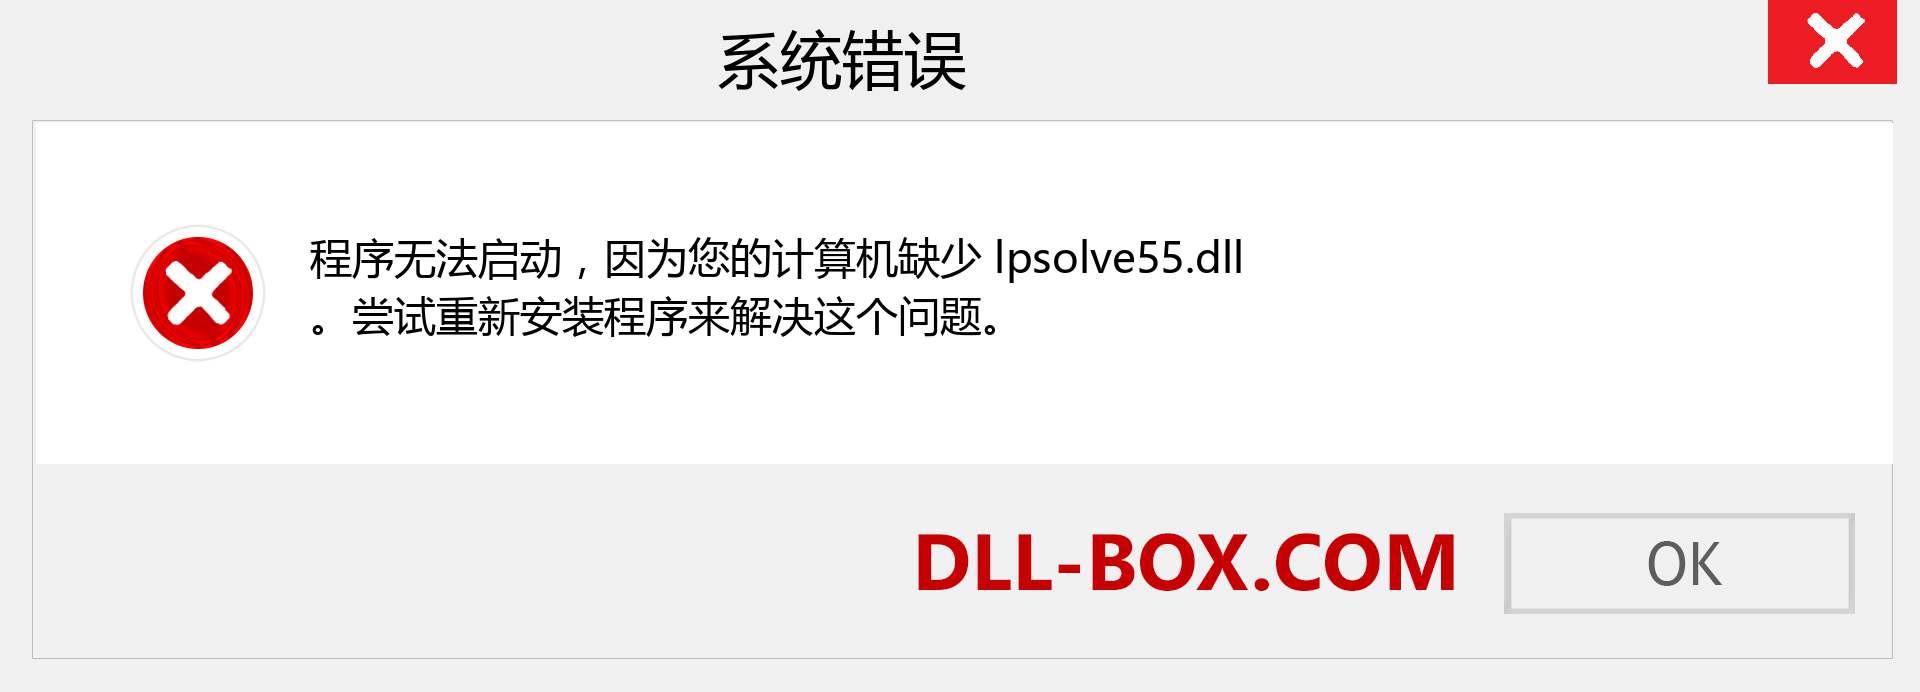 lpsolve55.dll 文件丢失？。 适用于 Windows 7、8、10 的下载 - 修复 Windows、照片、图像上的 lpsolve55 dll 丢失错误